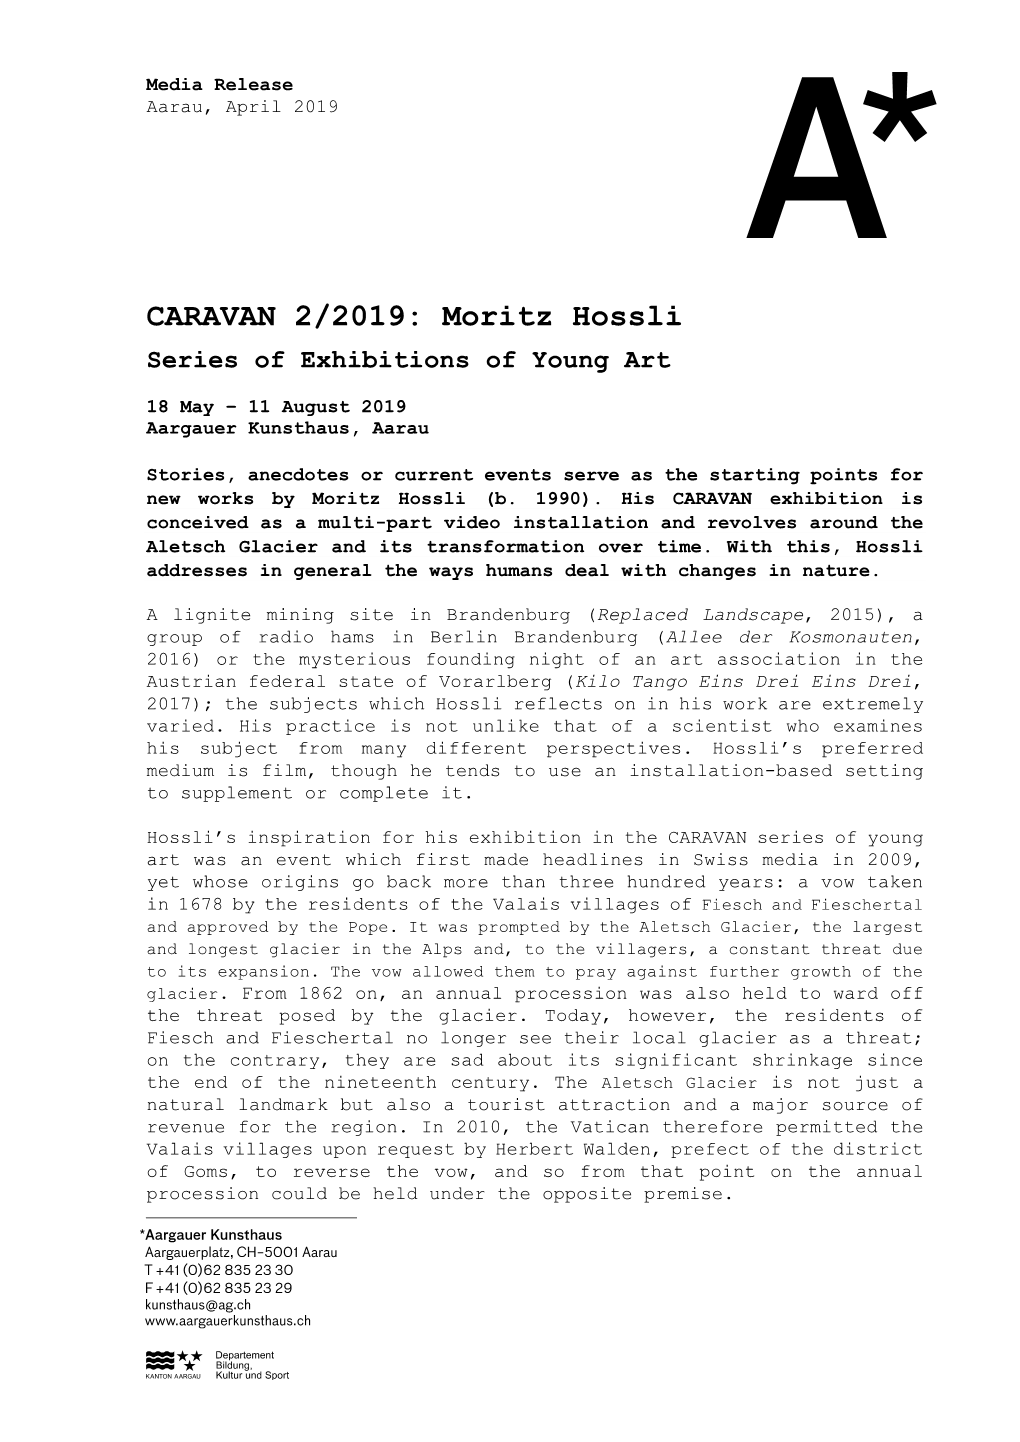 CARAVAN 2/2019: Moritz Hossli